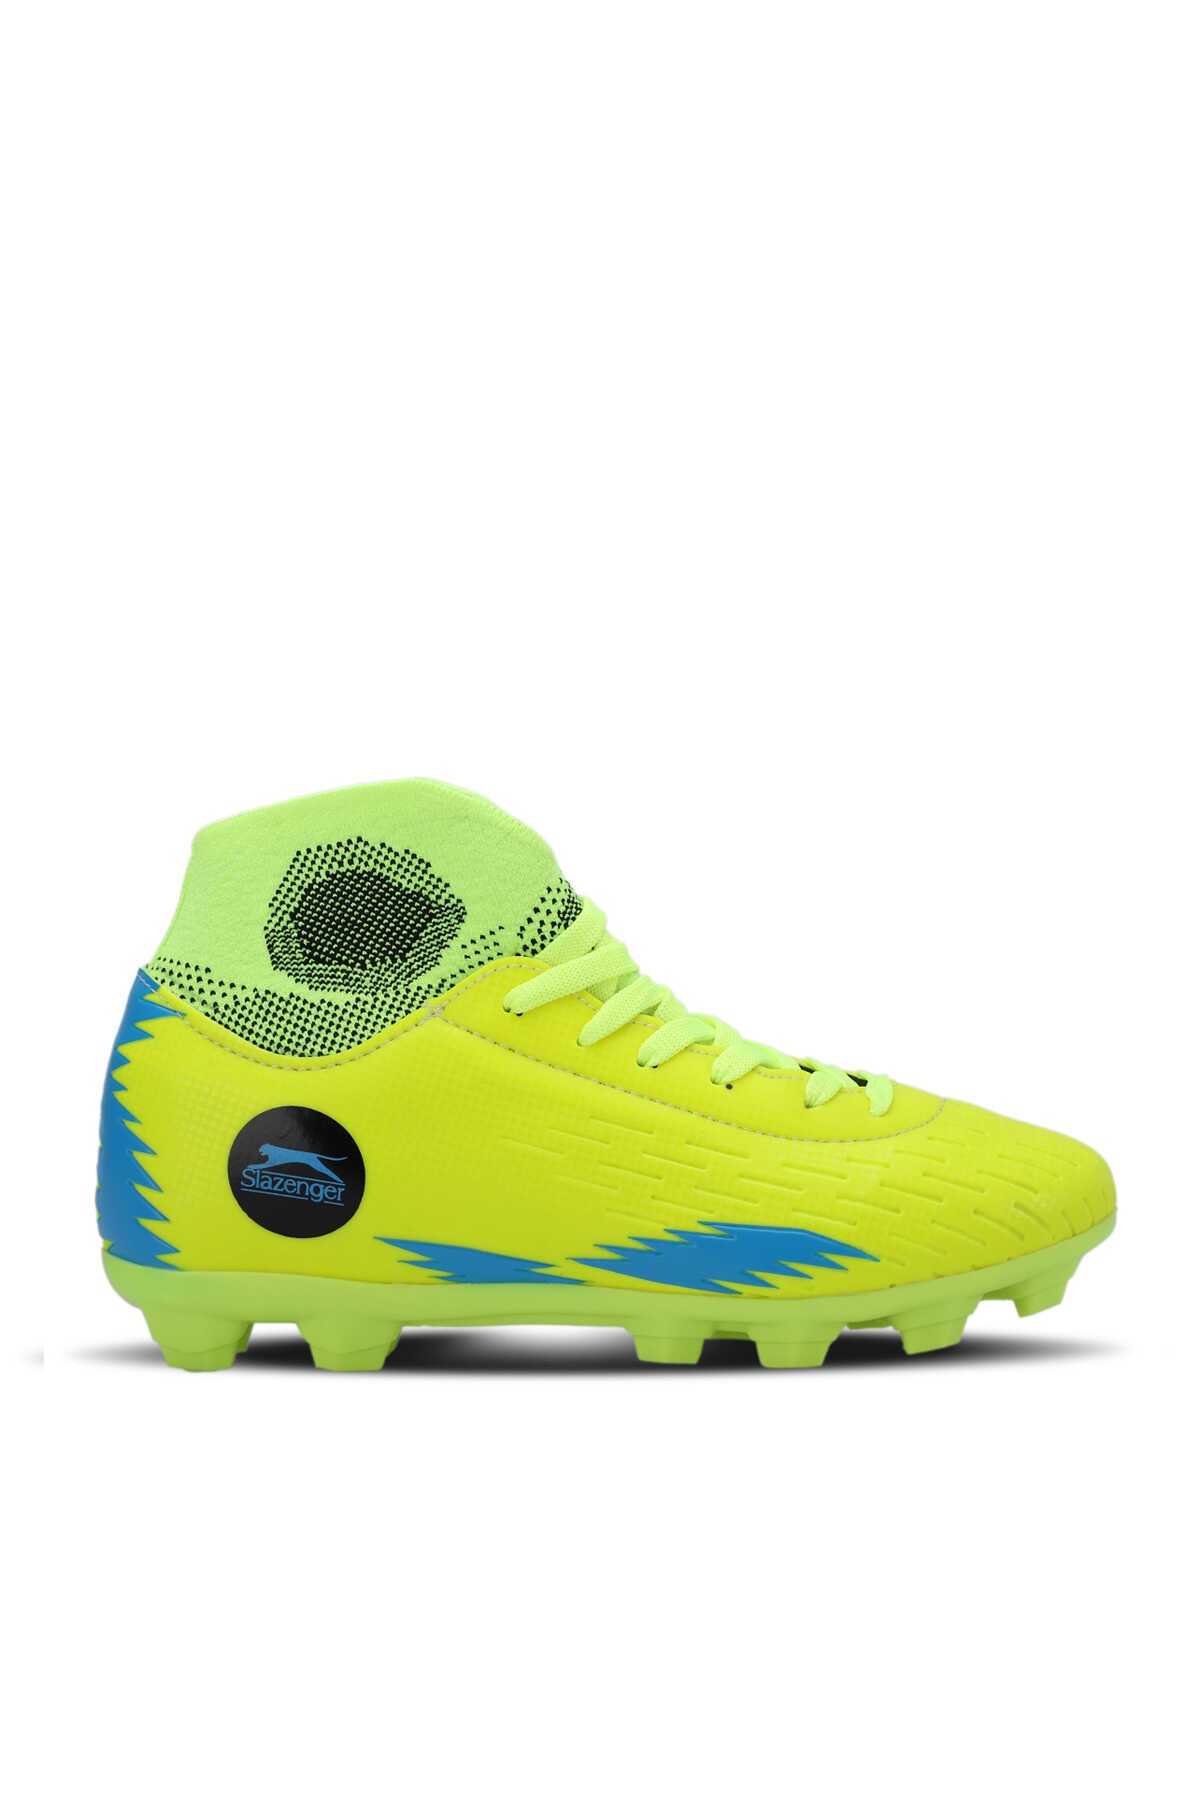 Slazenger - Slazenger HADAS KRP Futbol Erkek Çocuk Krampon Ayakkabı Neon Sarı